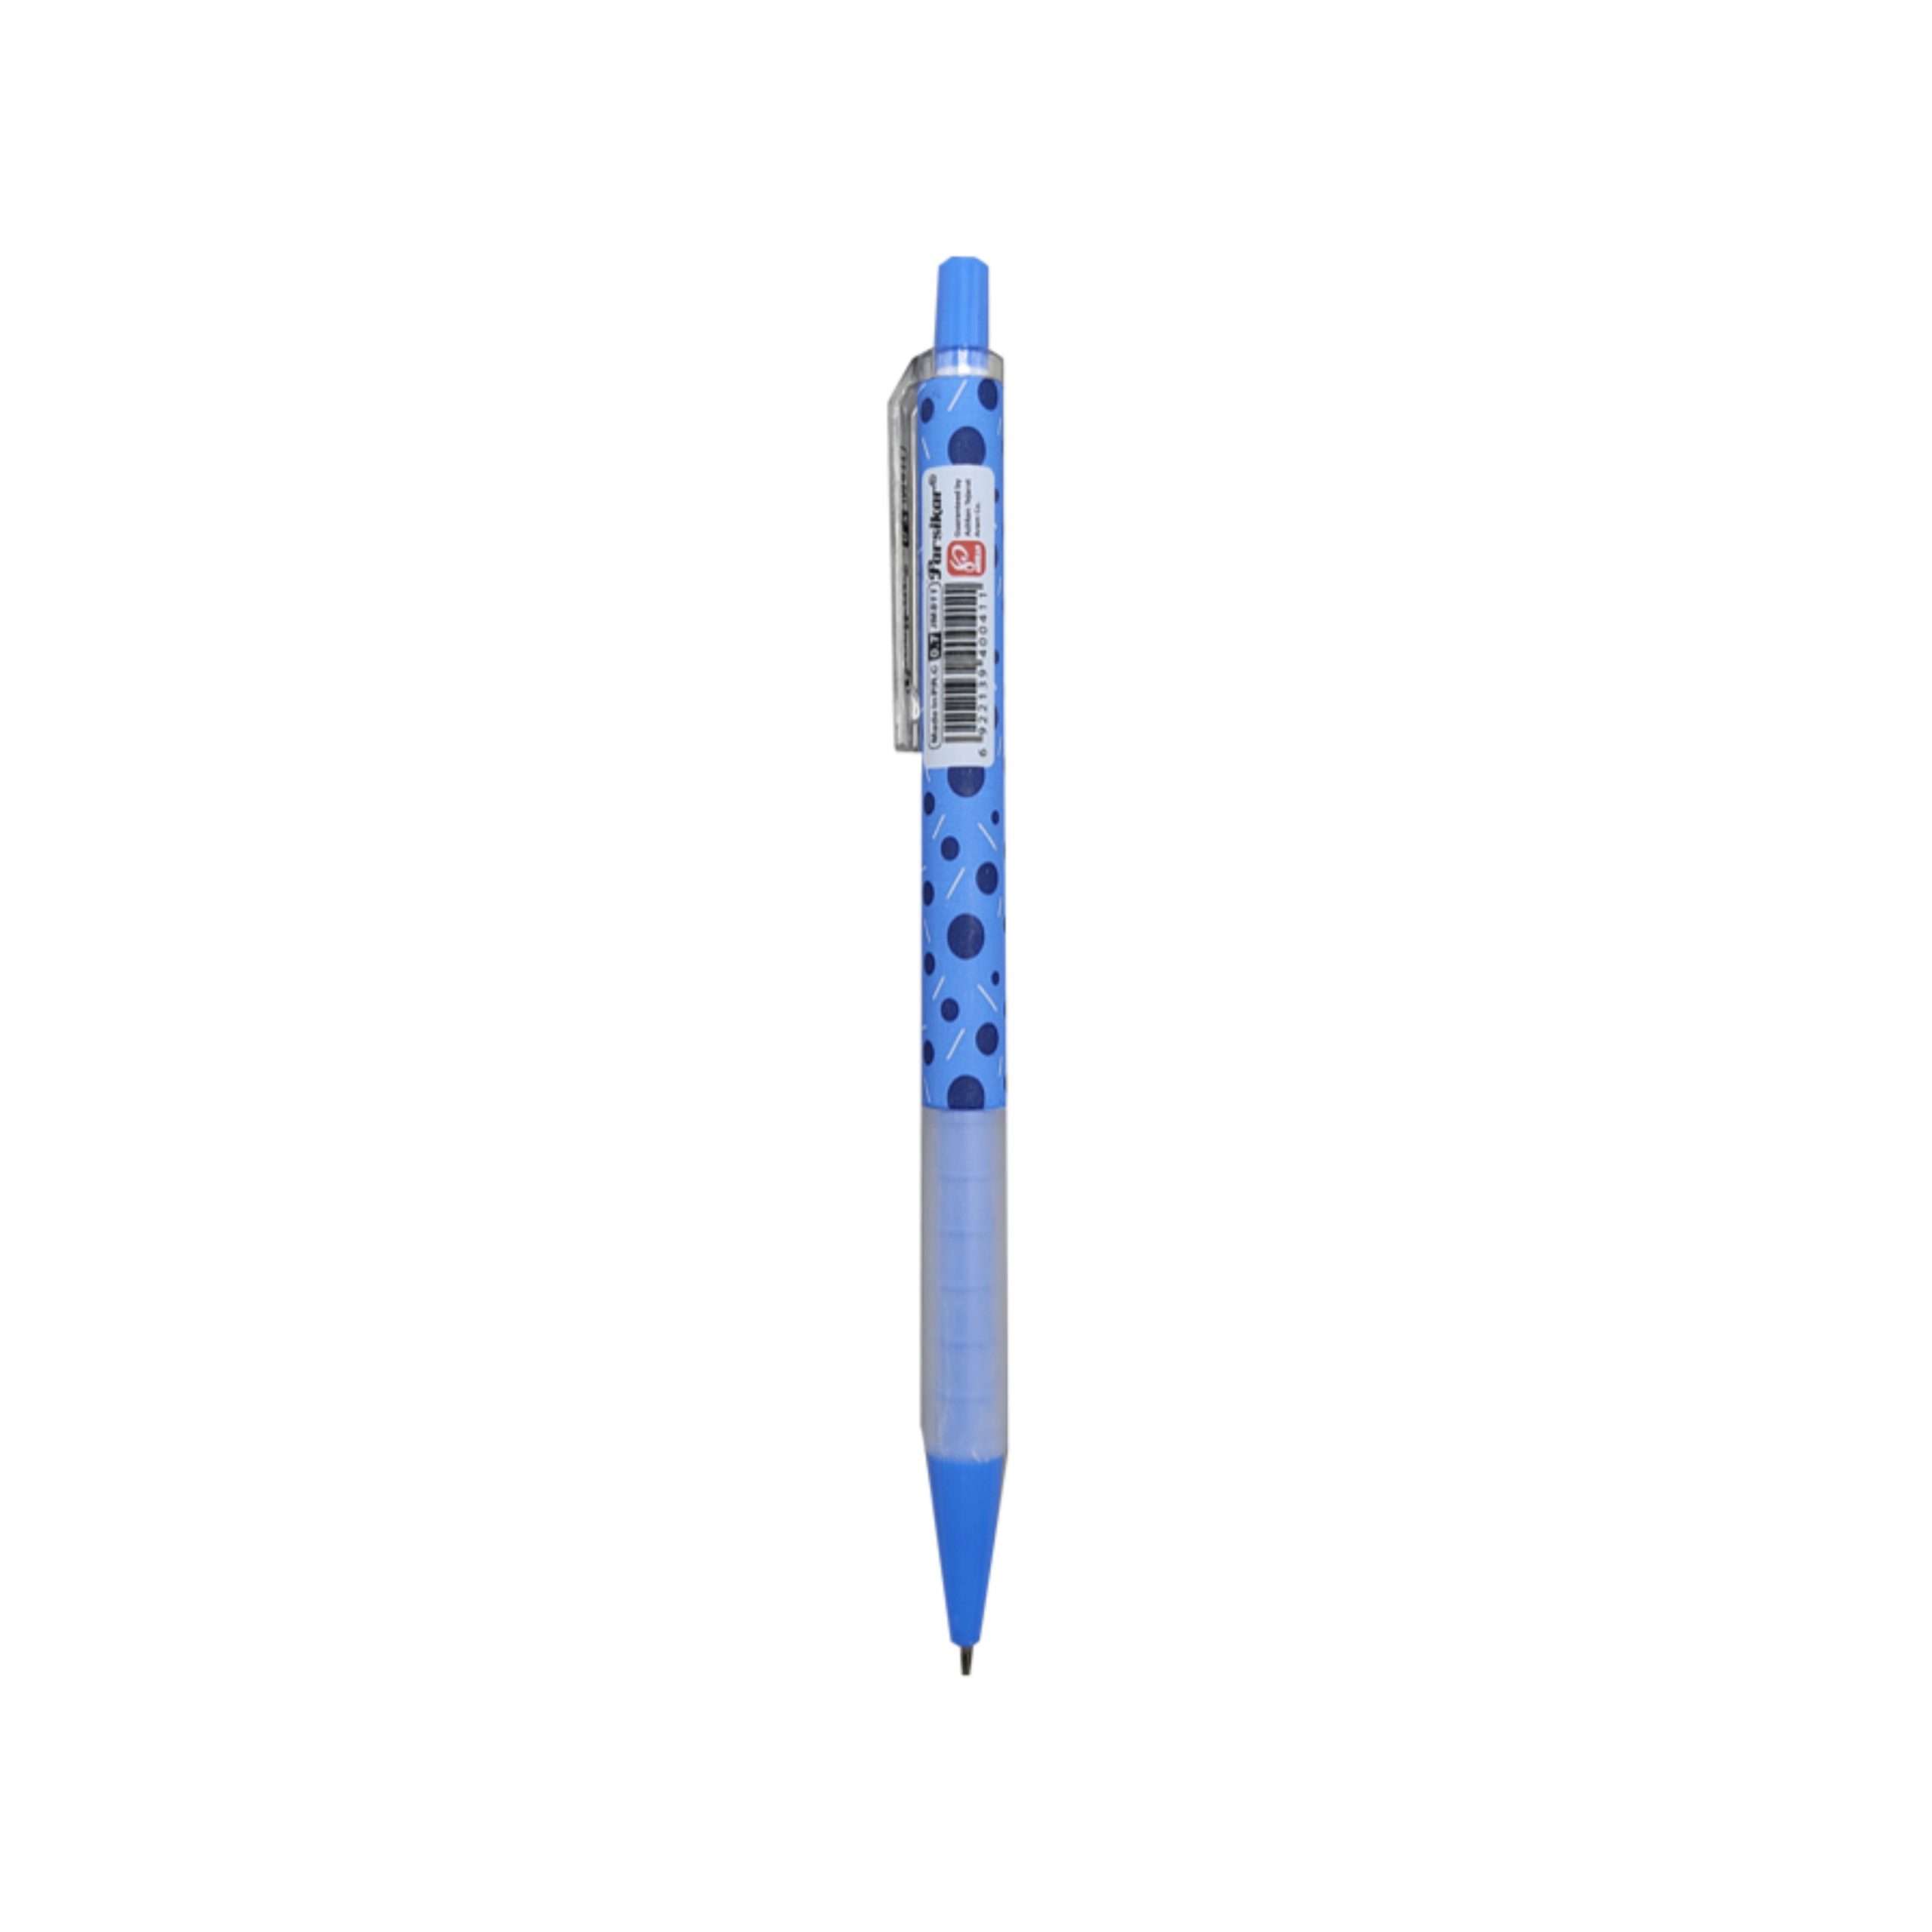 خرید انلاین مداد نوکی 0.5 Parsikar مدل Jm811 در وبسایت دوشنبه کالا